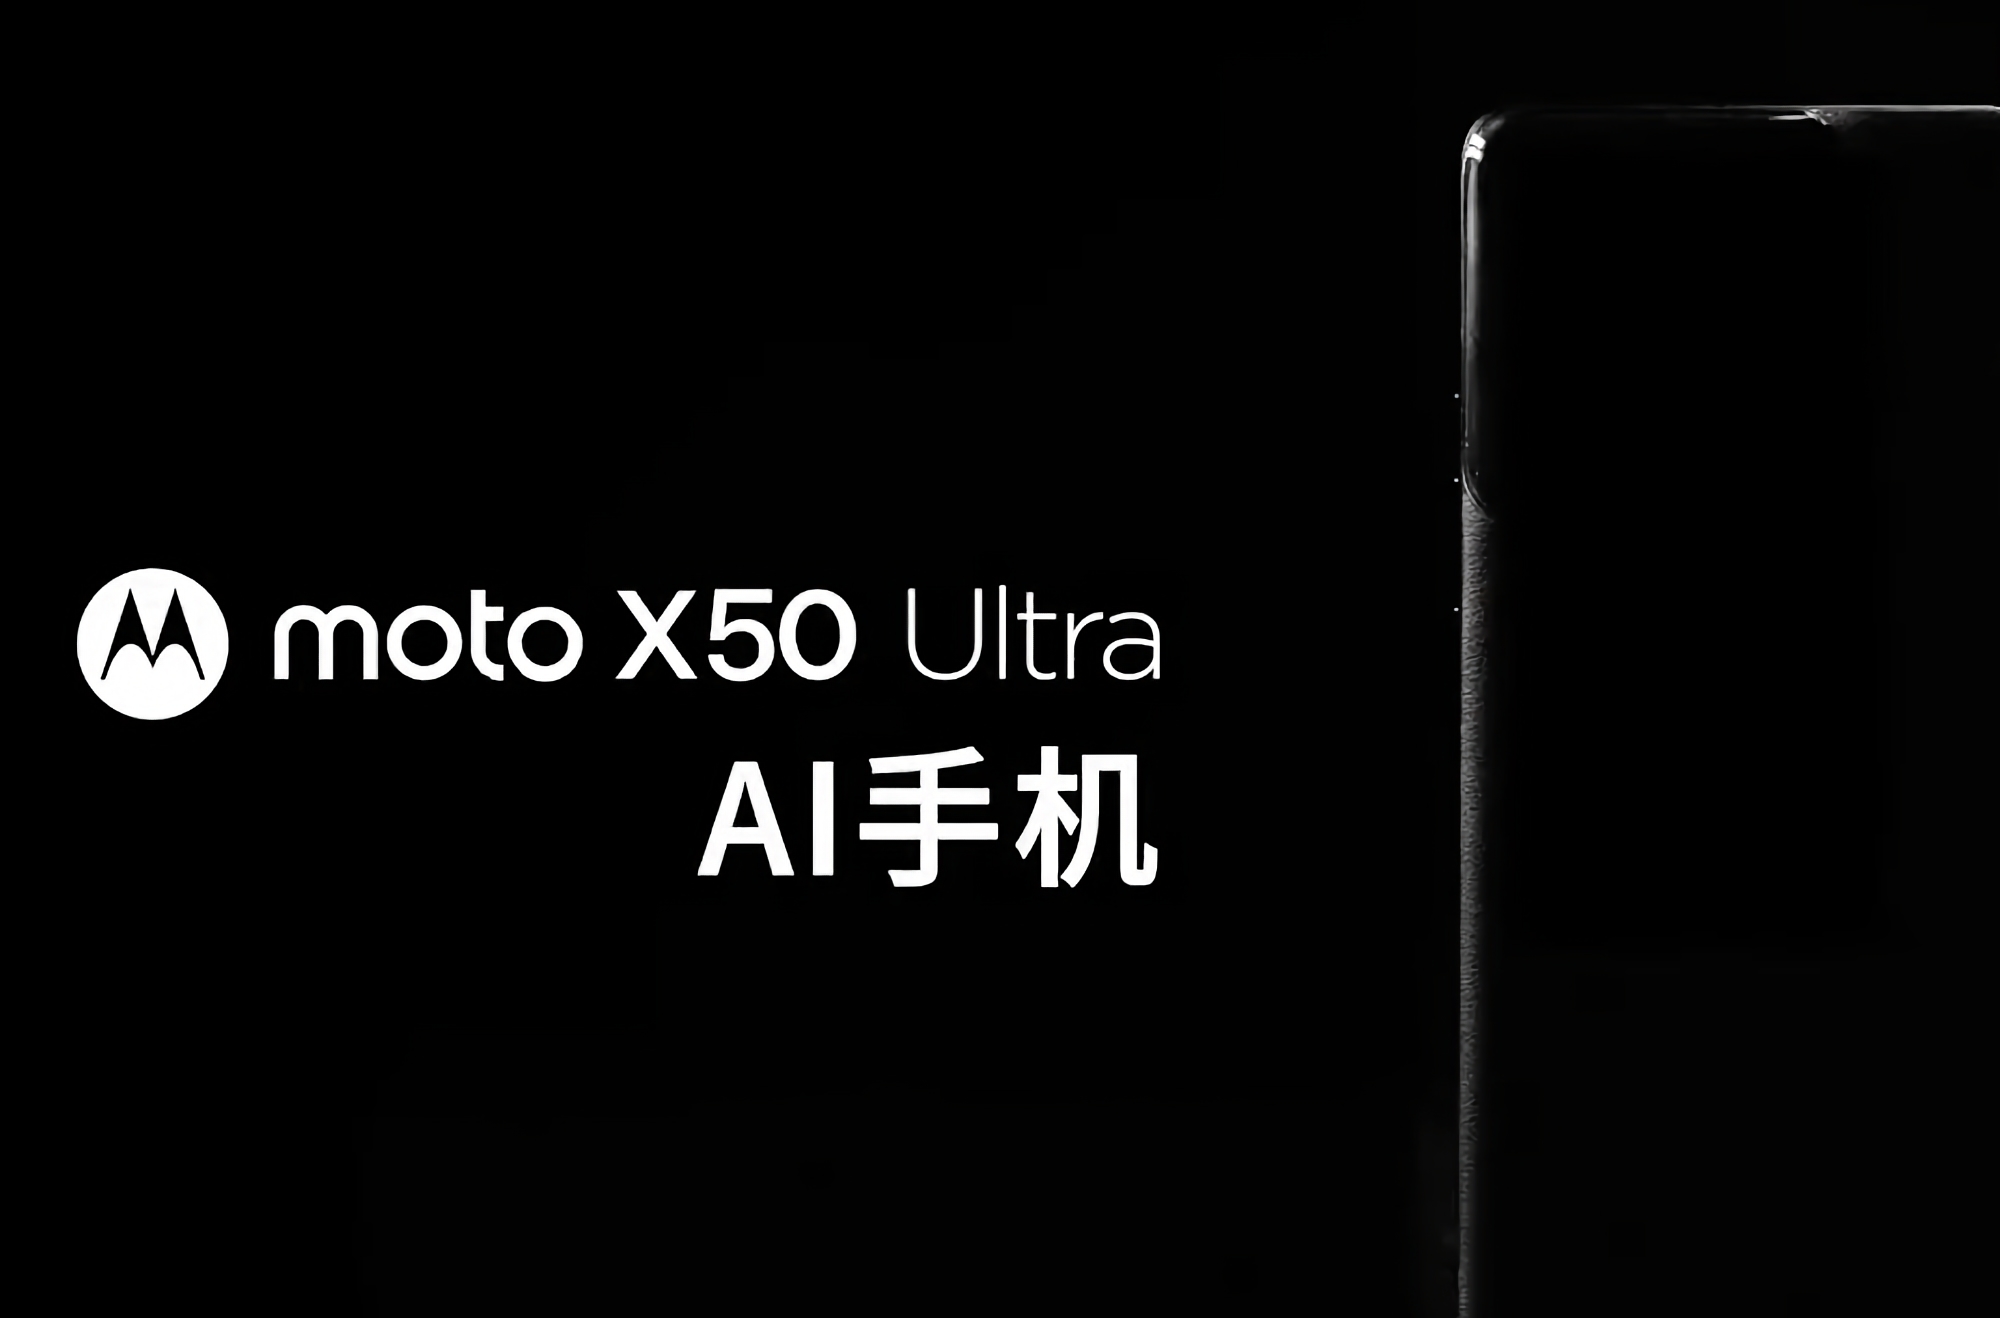 Nu är det officiellt: Motorola förbereder sig för att släppa flaggskeppsmobilen Moto X50 Ultra med AI-funktioner